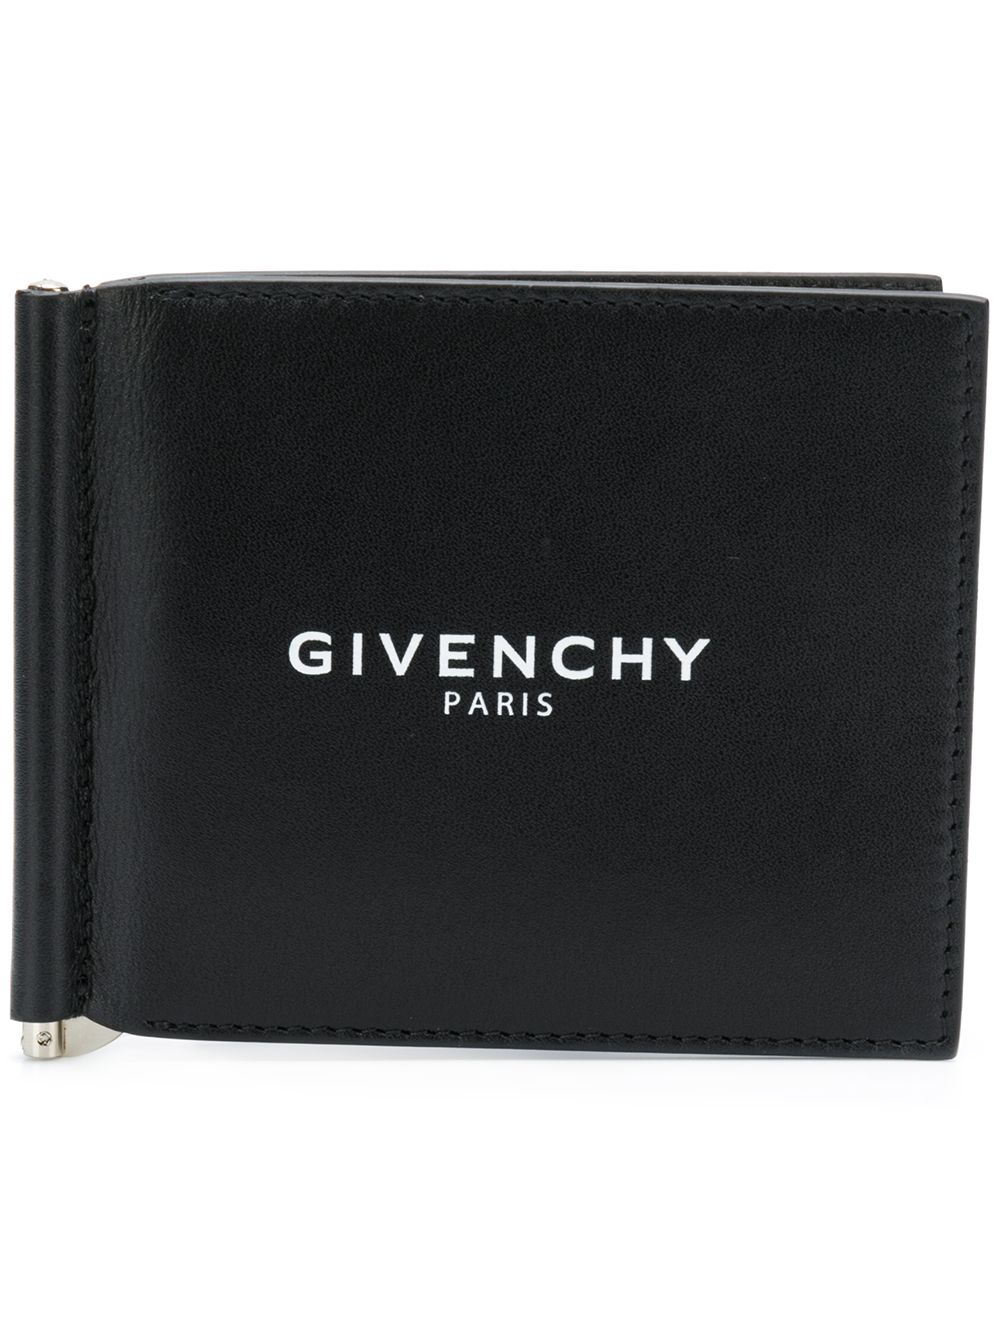 фото Givenchy кошелек с зажимом для денег и принтом логотипа